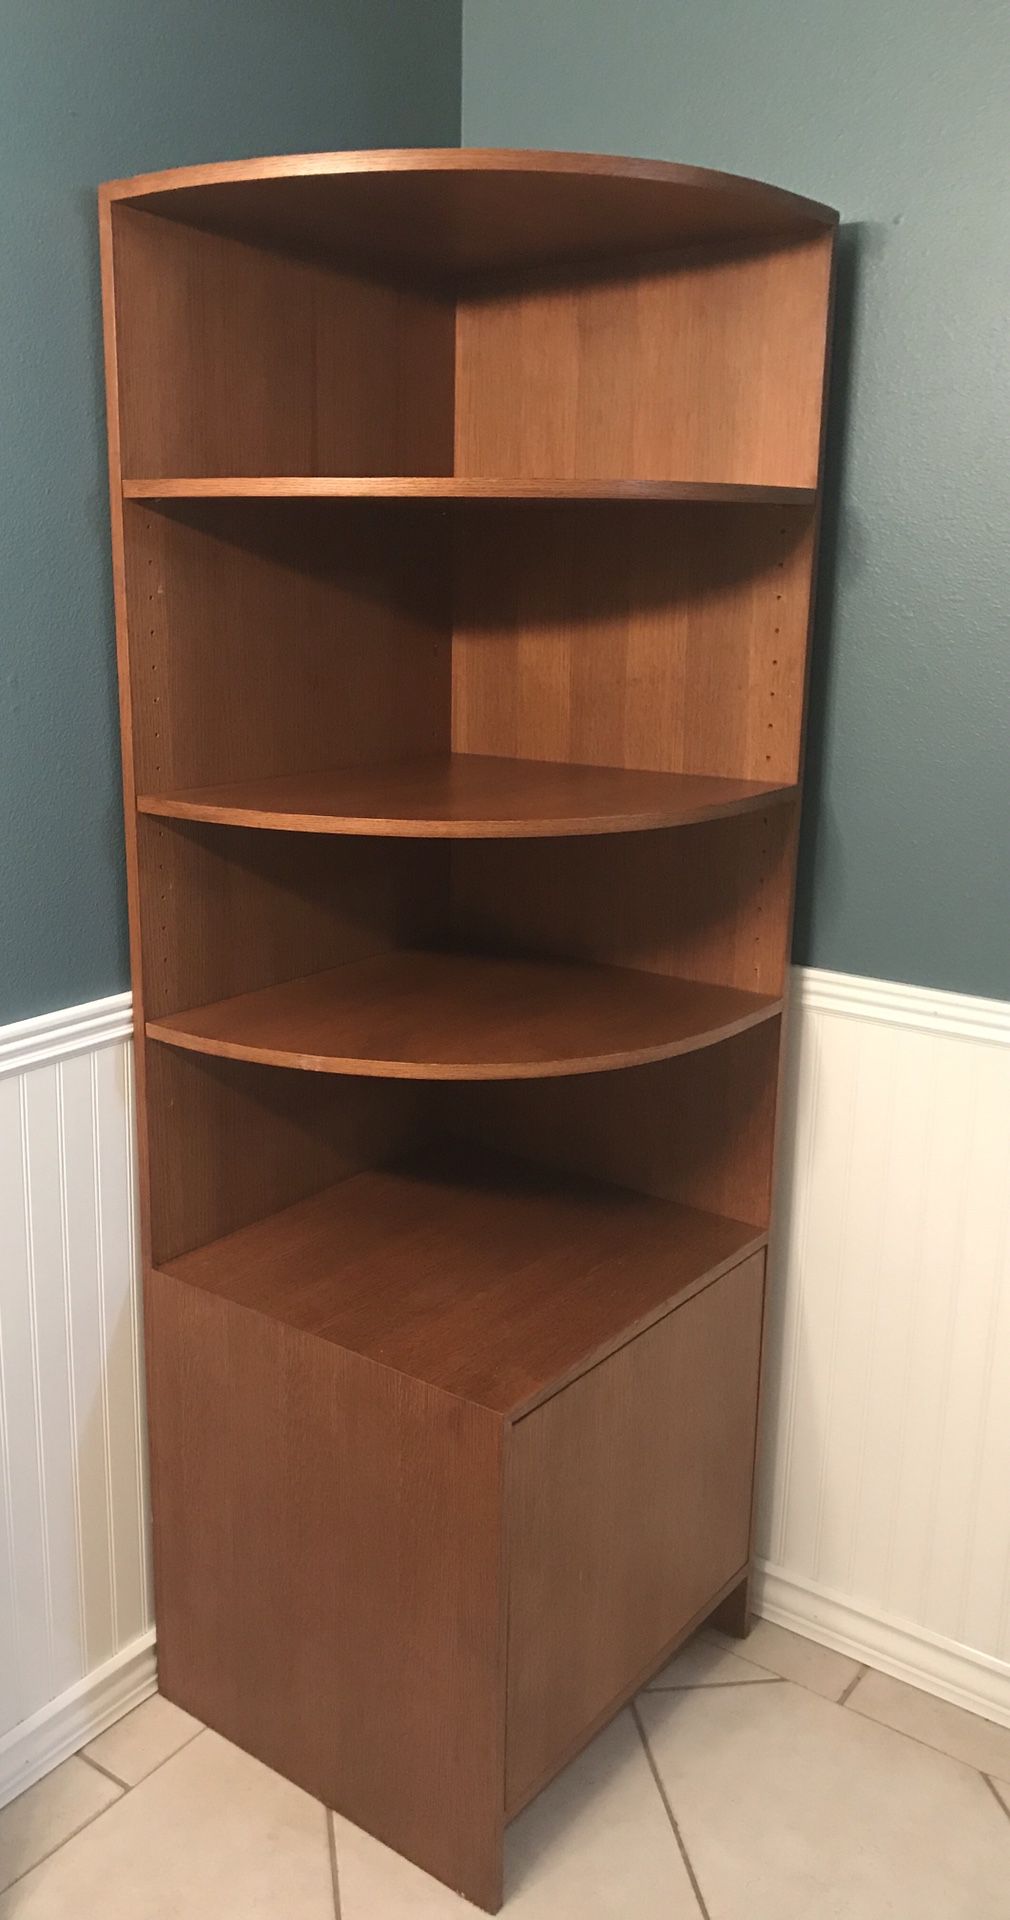 Corner shelf and storage